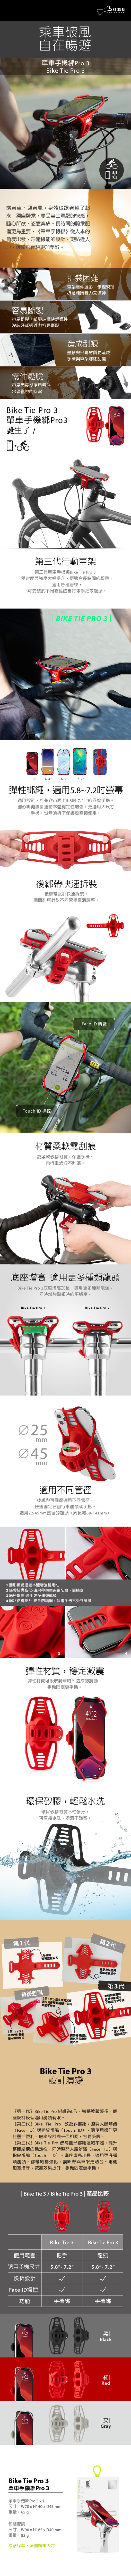 【3/29~5/31畢業季早鳥88折優惠】Bone Bike Tie Pro 3 單車手機綁 Pro 3(灰)